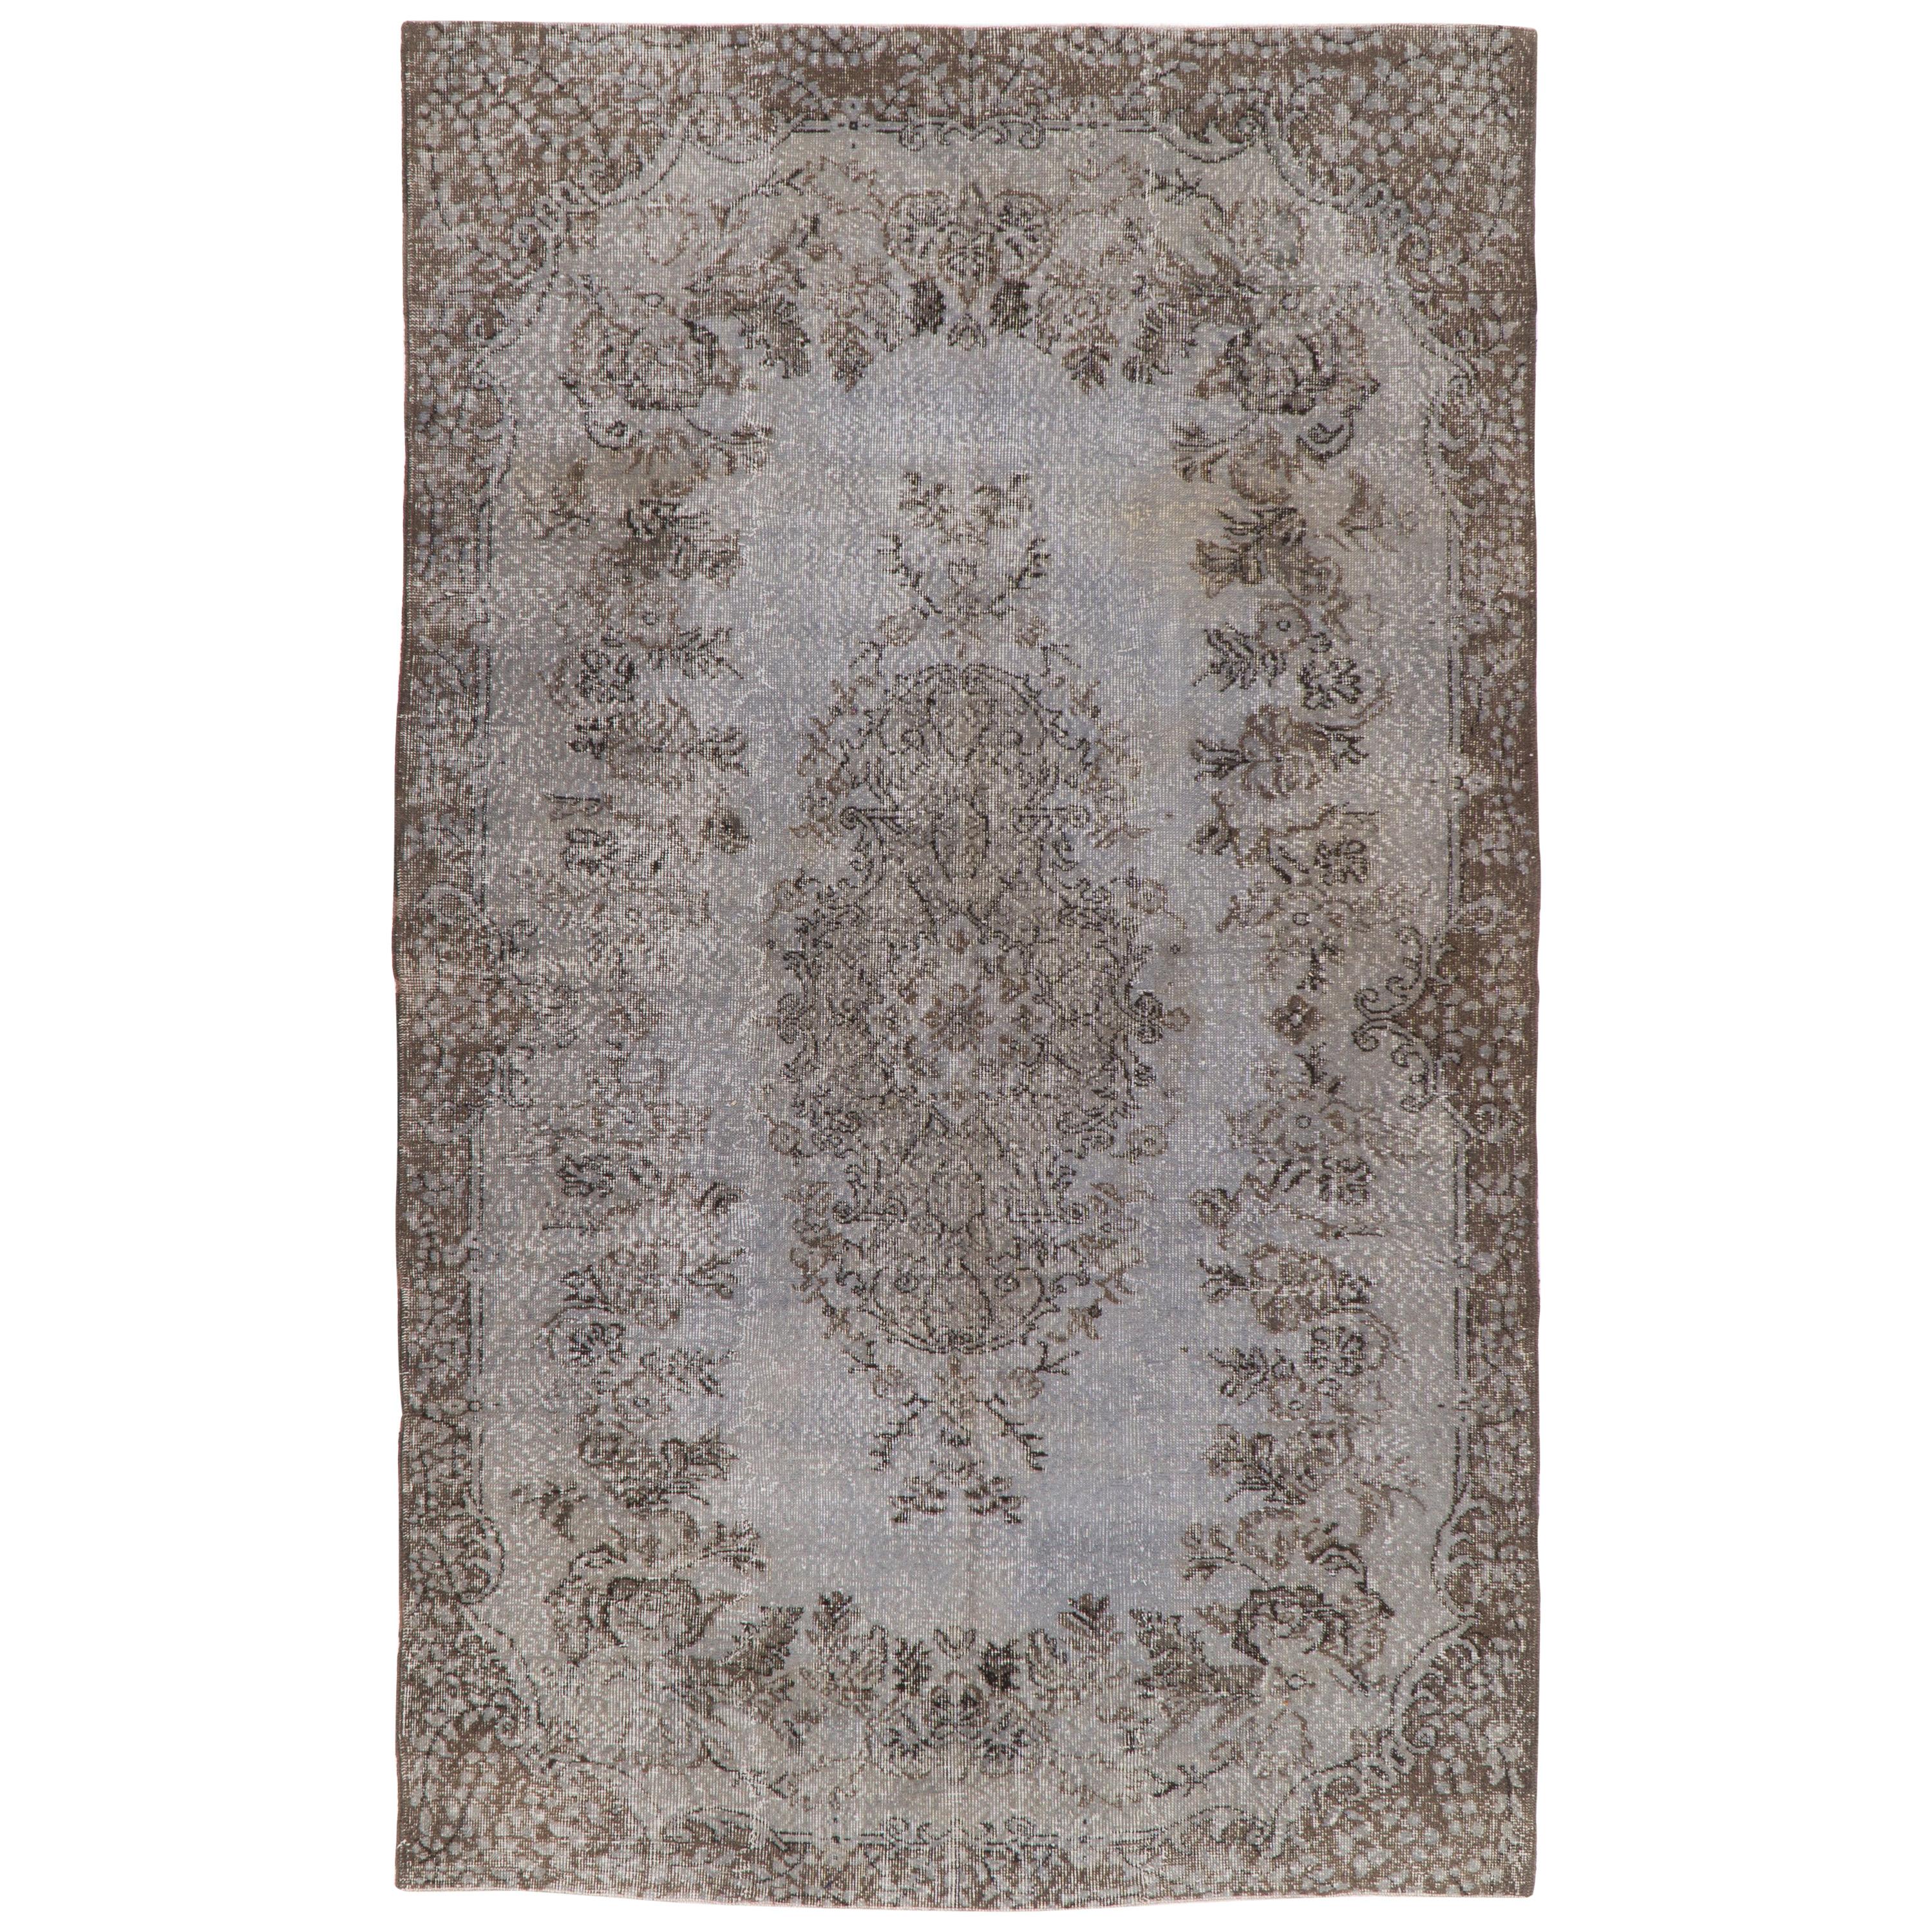 6x10 Ft Vintage handgefertigter anatolischer Teppich in grauer Farbe, neu gefärbt